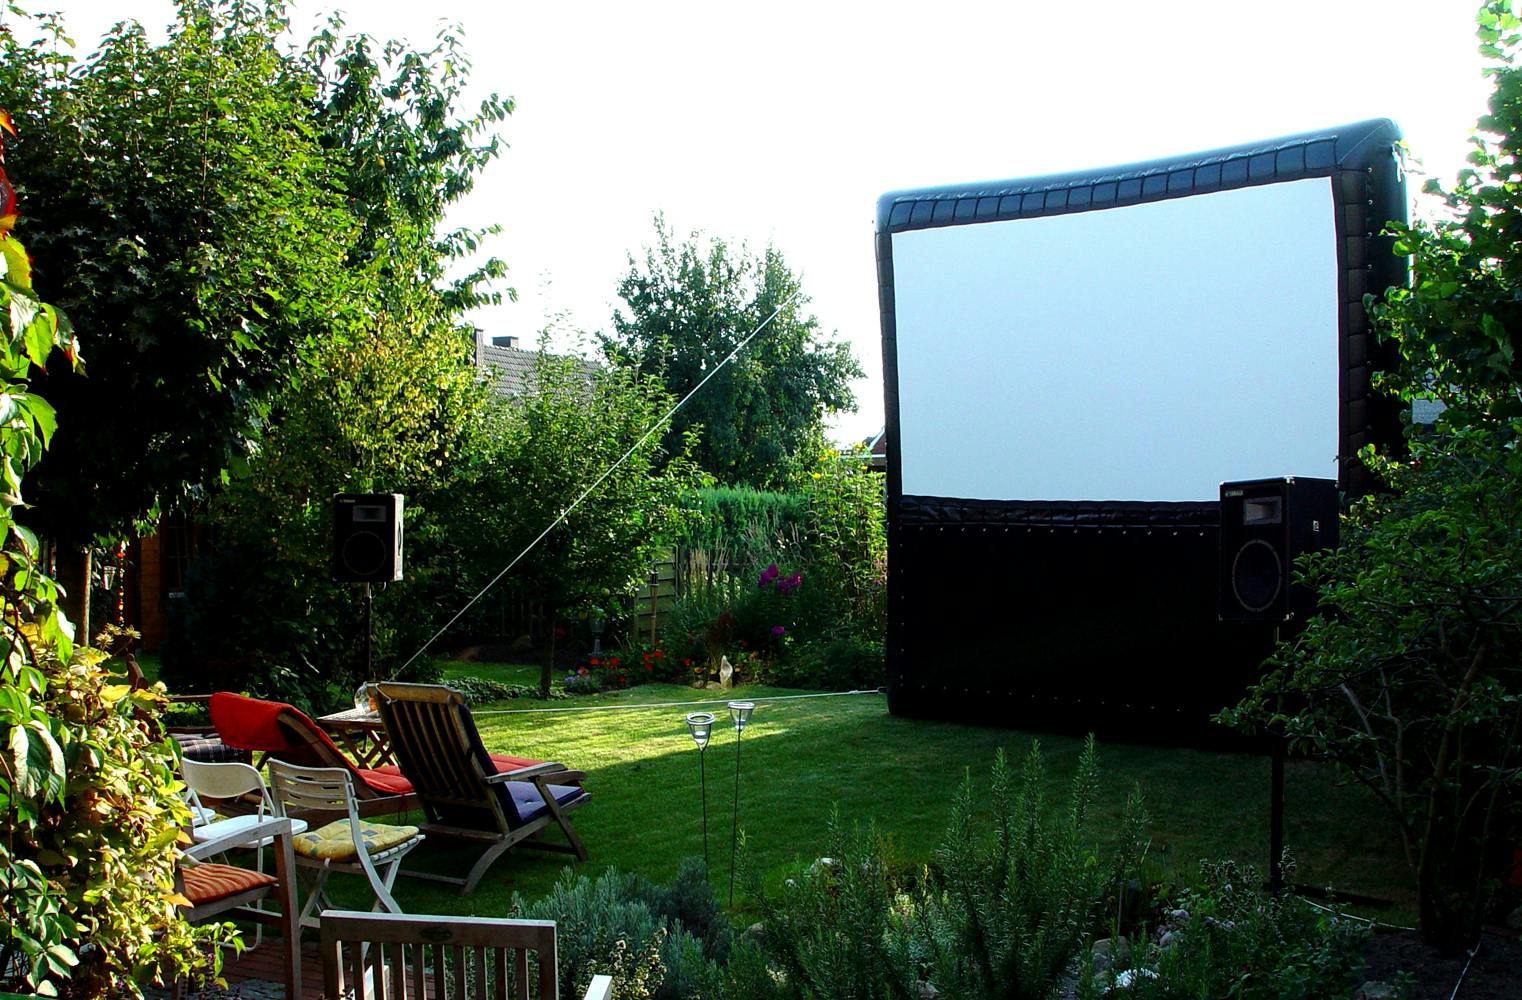 Kino im Garten | dein privates Sommer Open Air Kino Erlebnis